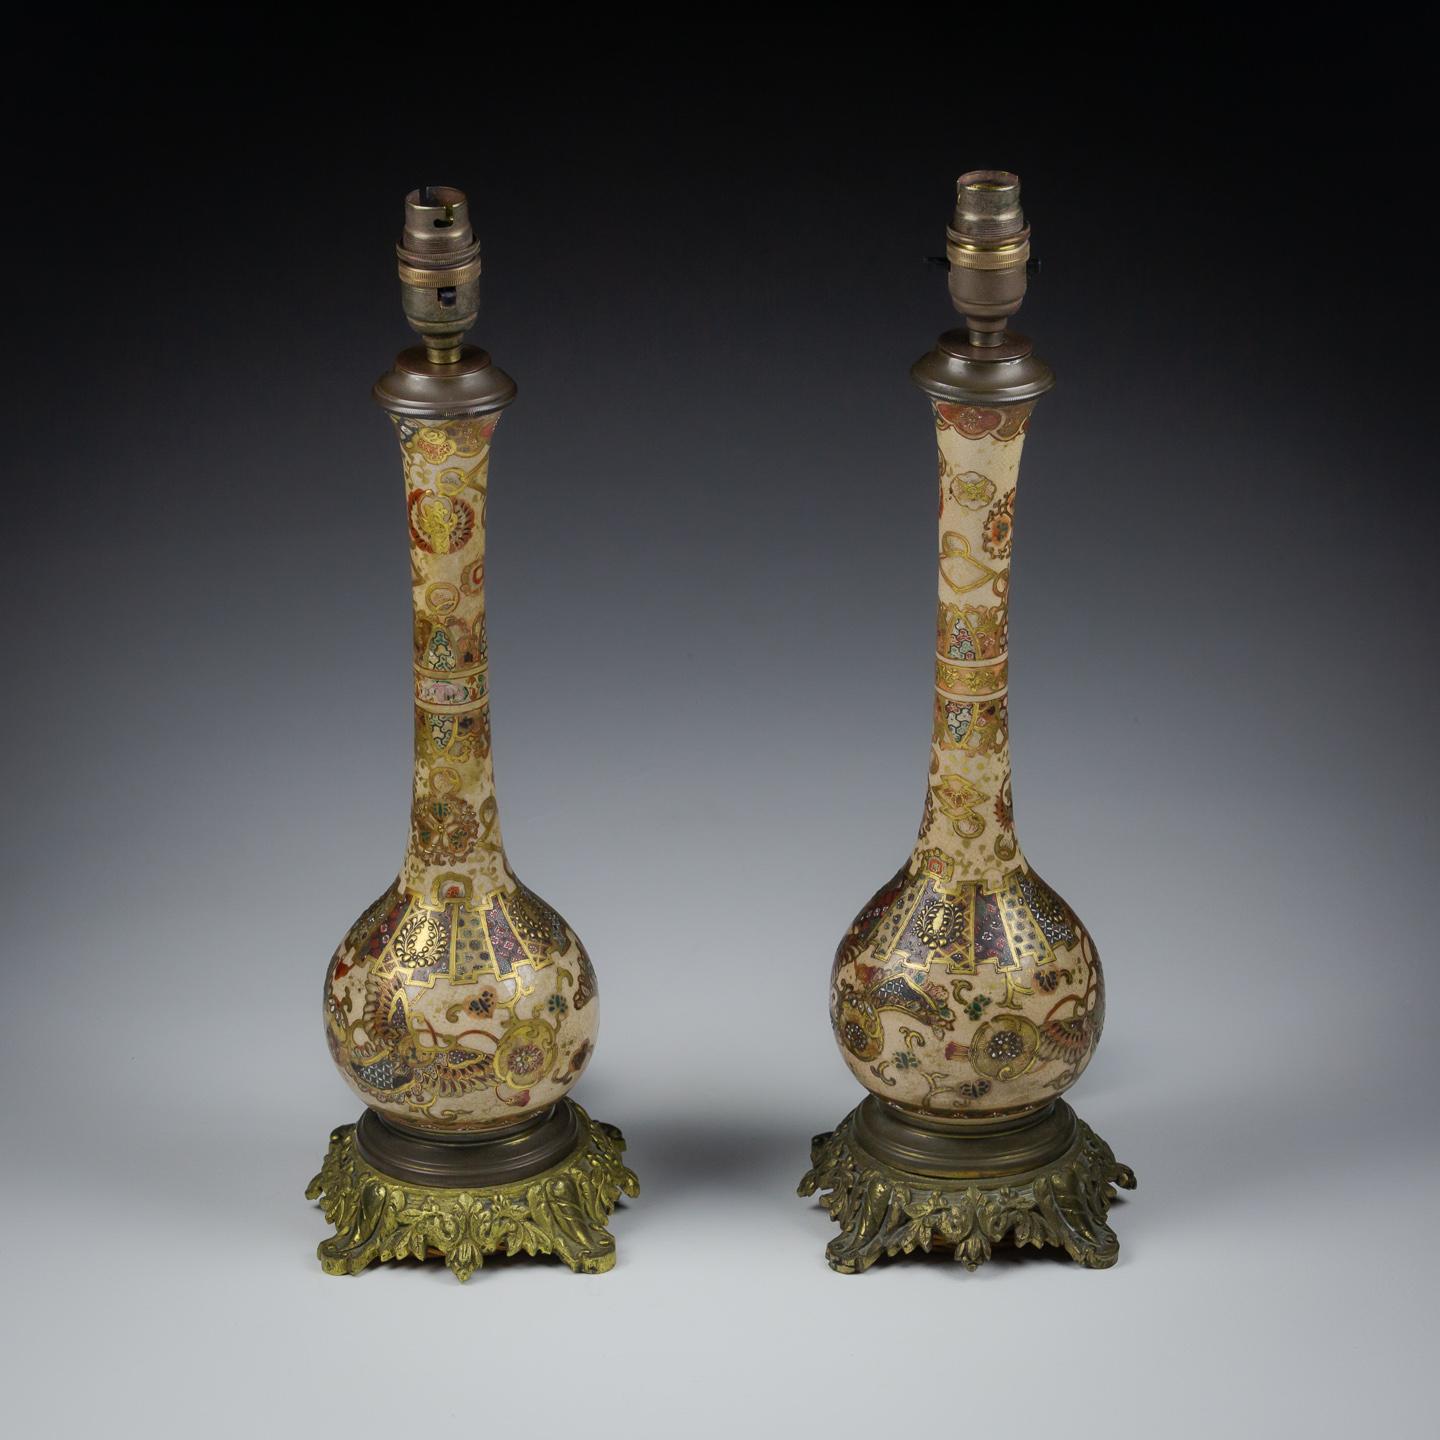 Paire de lampes-vases en porcelaine de Satsuma. État impressionnant, probablement converties en lampes au milieu du 20e siècle à l'aide de montures en bronze d'excellente qualité.

Japon, période Meiji, vers 1880.

Recâblée avec un cordon flexible